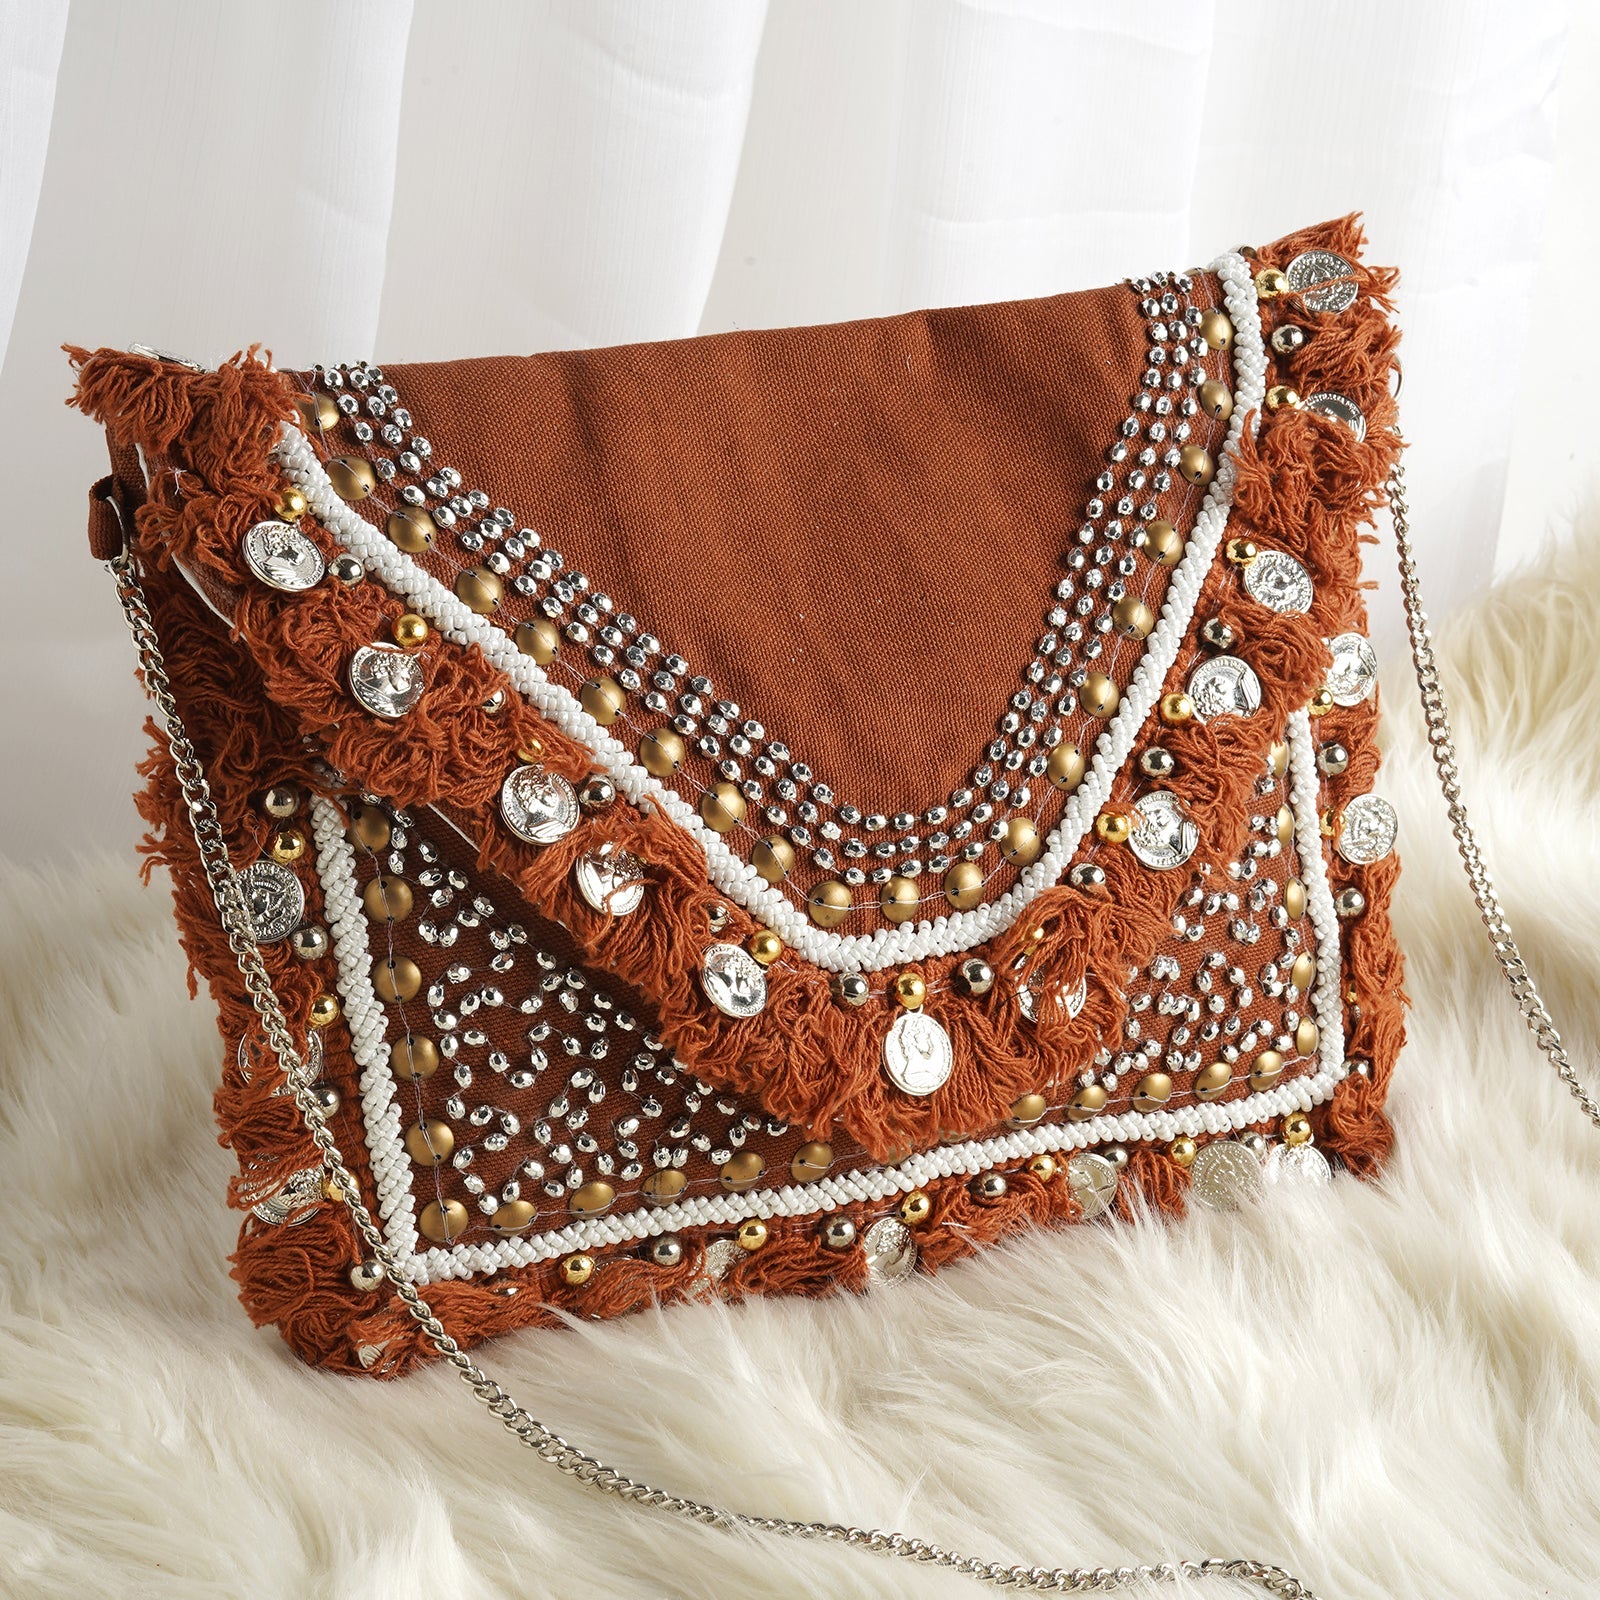 Cotton Fashion Banjara Bags at Rs 950/bag in Surat | ID: 26119721997